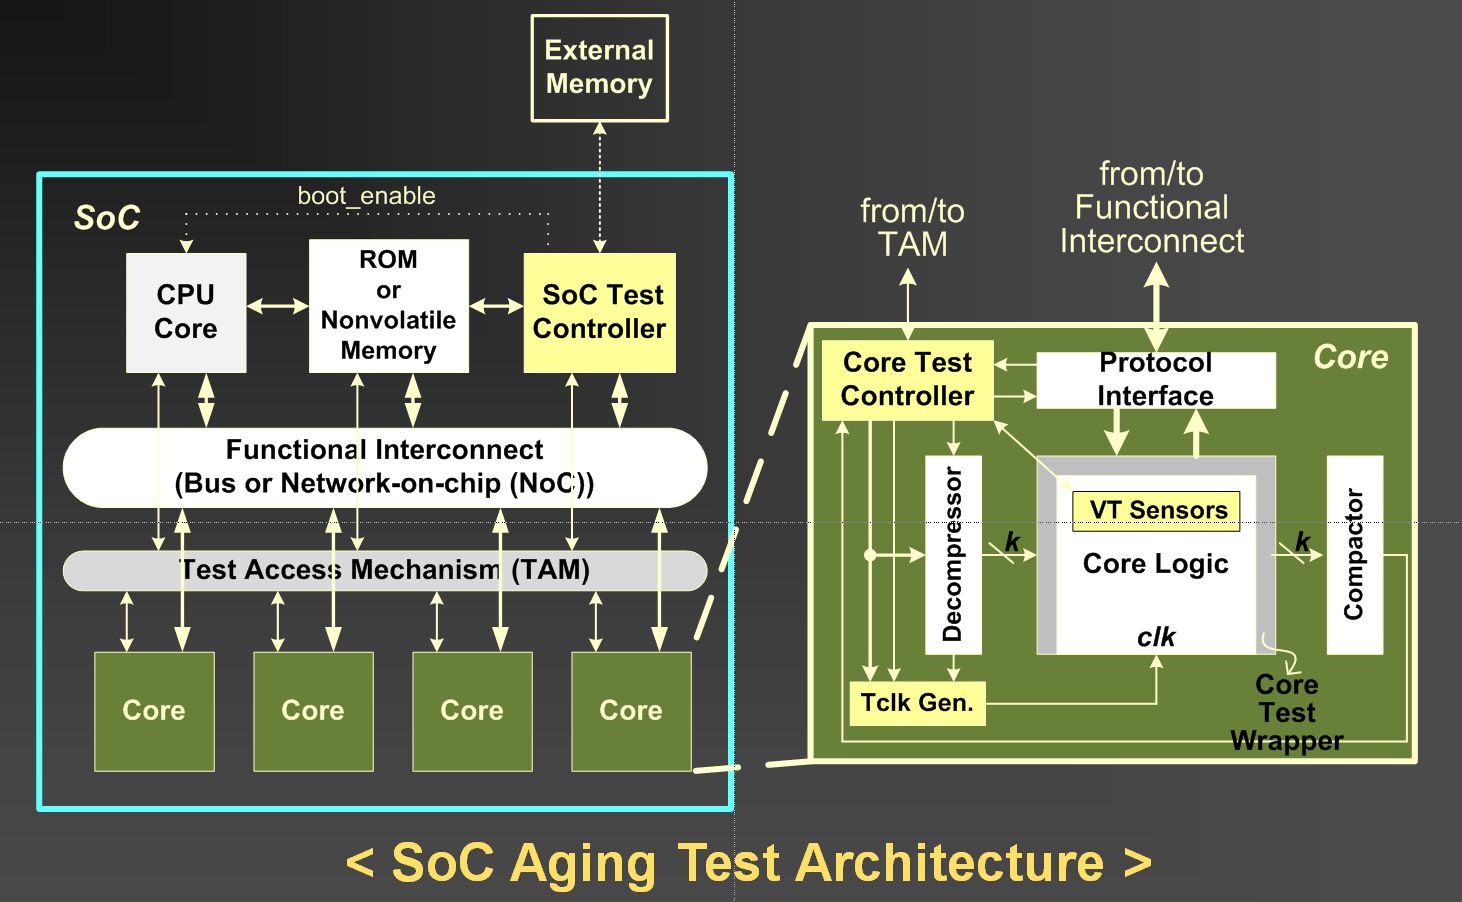 劣化検知アーキテクチャシステムオンチップ自身の劣化を予測するテストアーキテクチャ。SoC Test Controller、Core Test Controllerなどテスト回路を埋め込んで、チップ自身のテストを自己チェックできる手法仕組みを提案している。